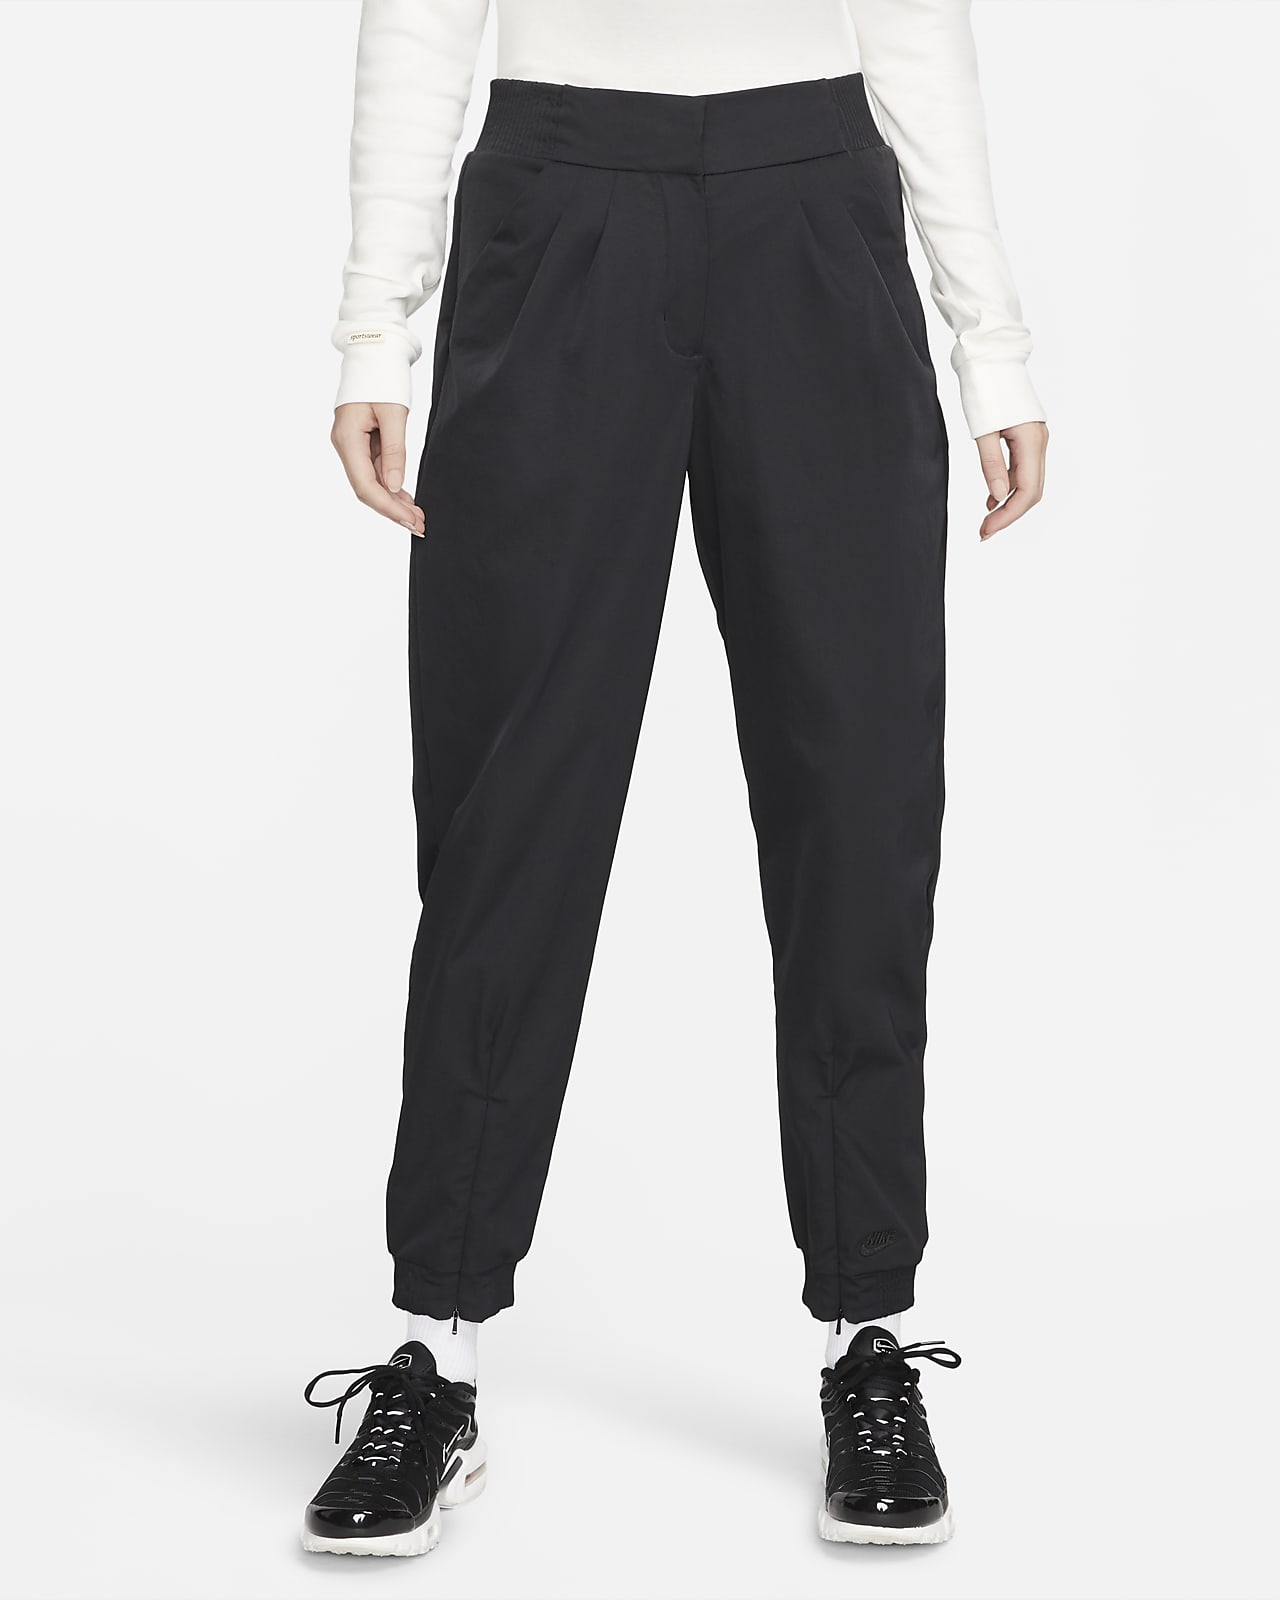 Nike Sportswear Dri-FIT Tech Pack Pantalón de talle alto - Mujer